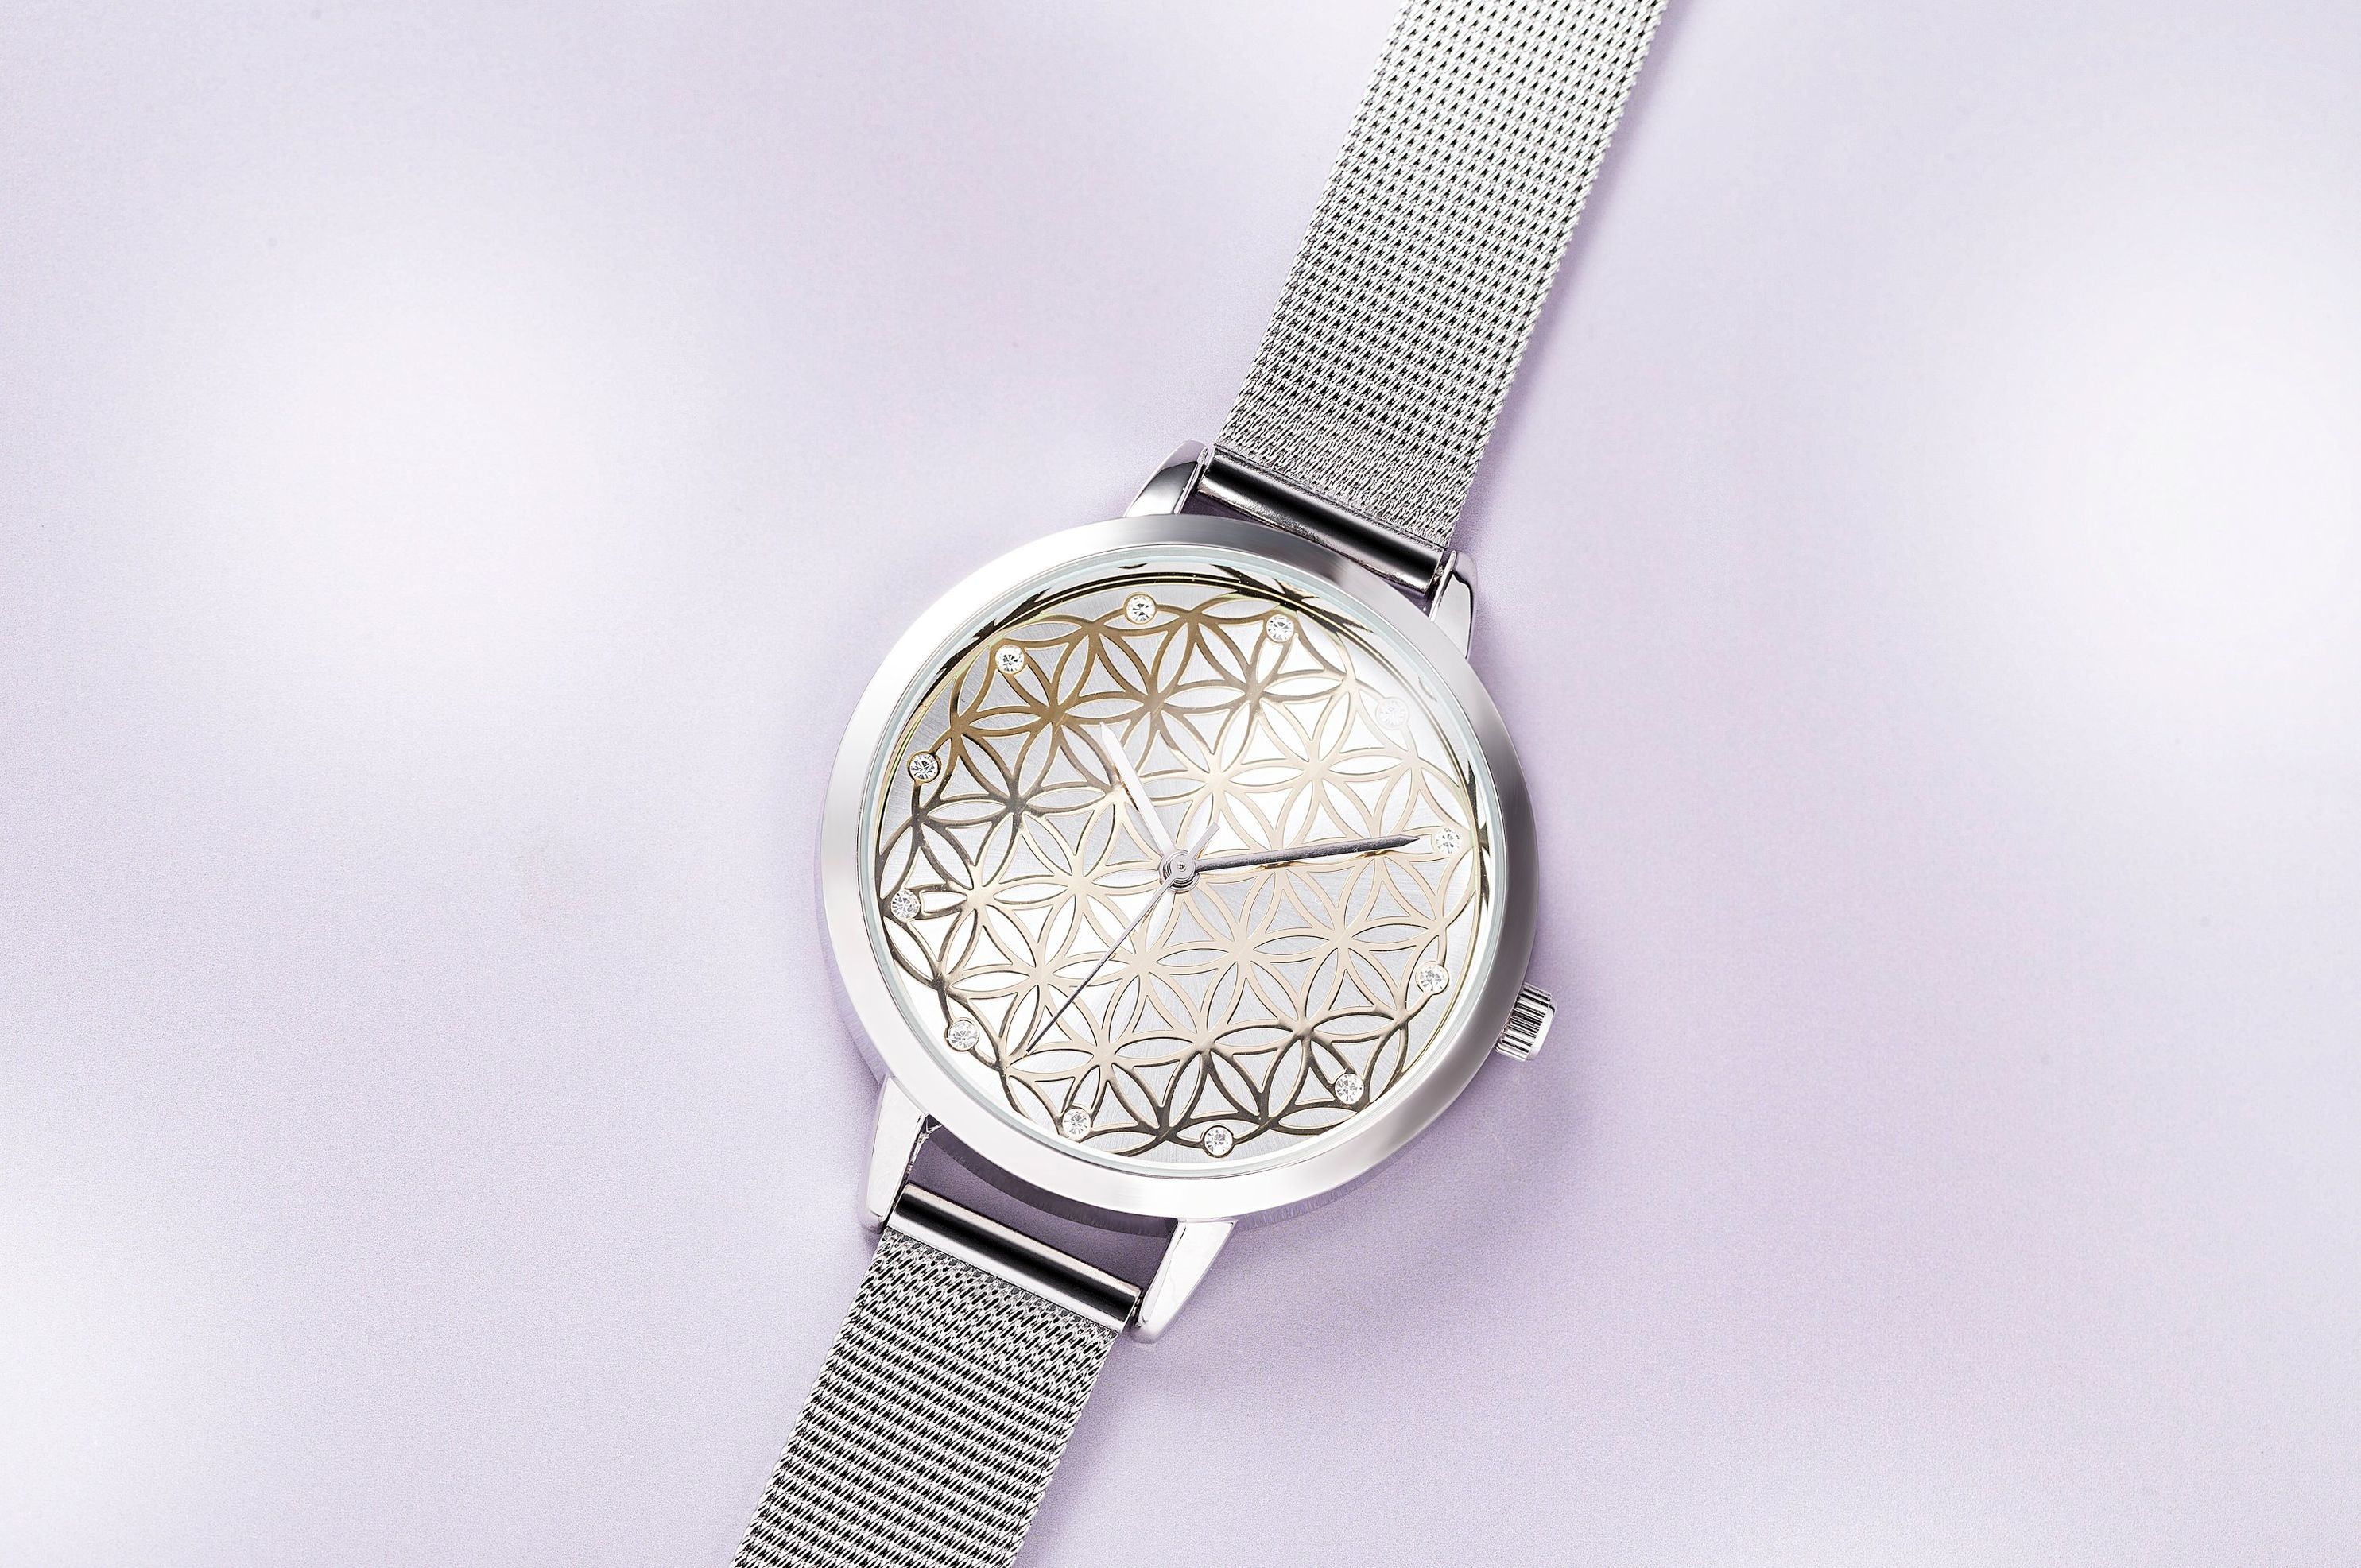 CB Armbanduhr Blume des Lebens jetzt bei Weltbild.de bestellen